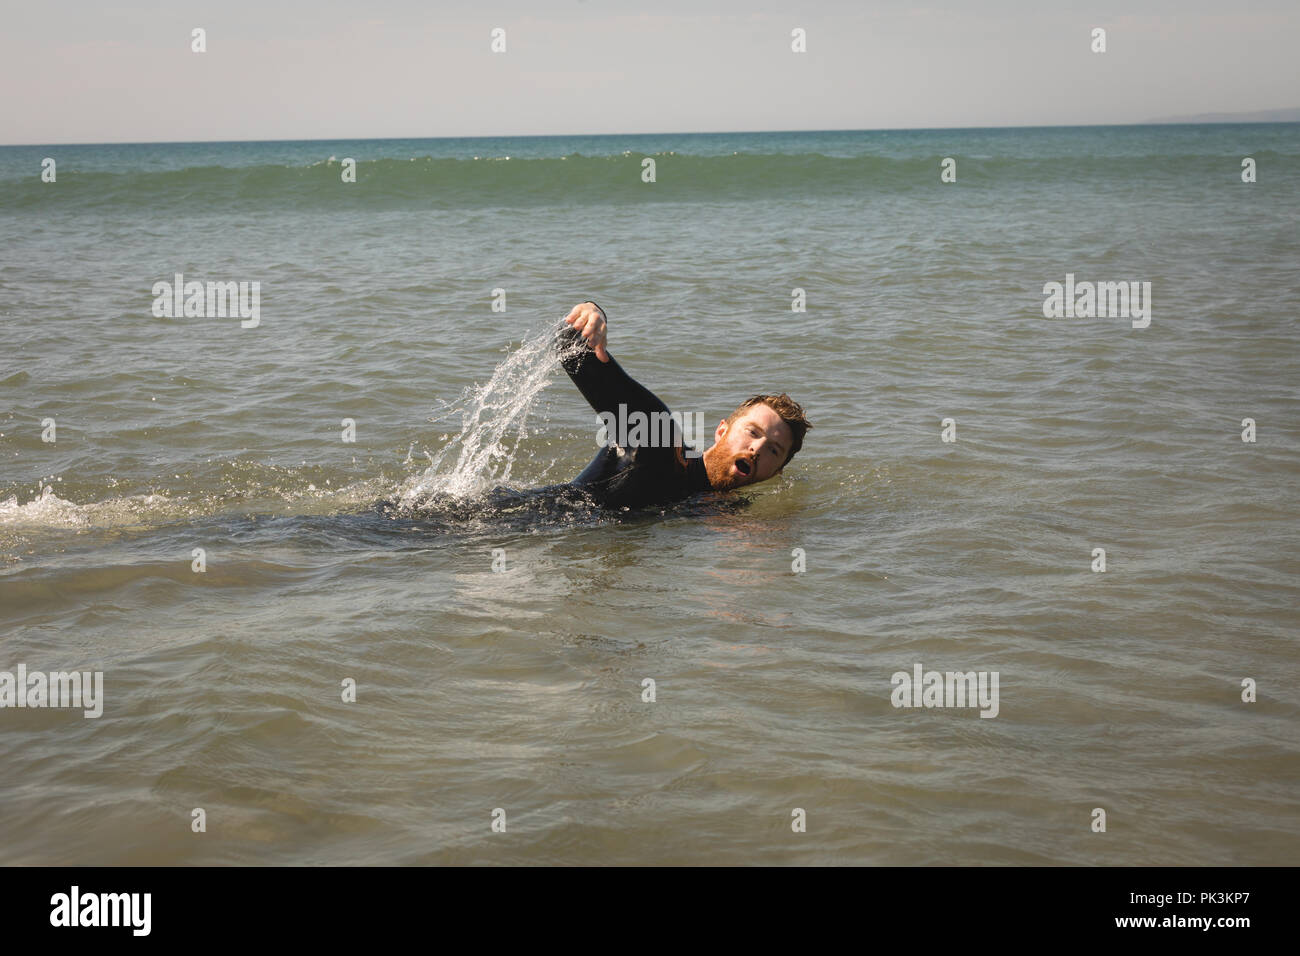 Surfer swimming in sea Stock Photo